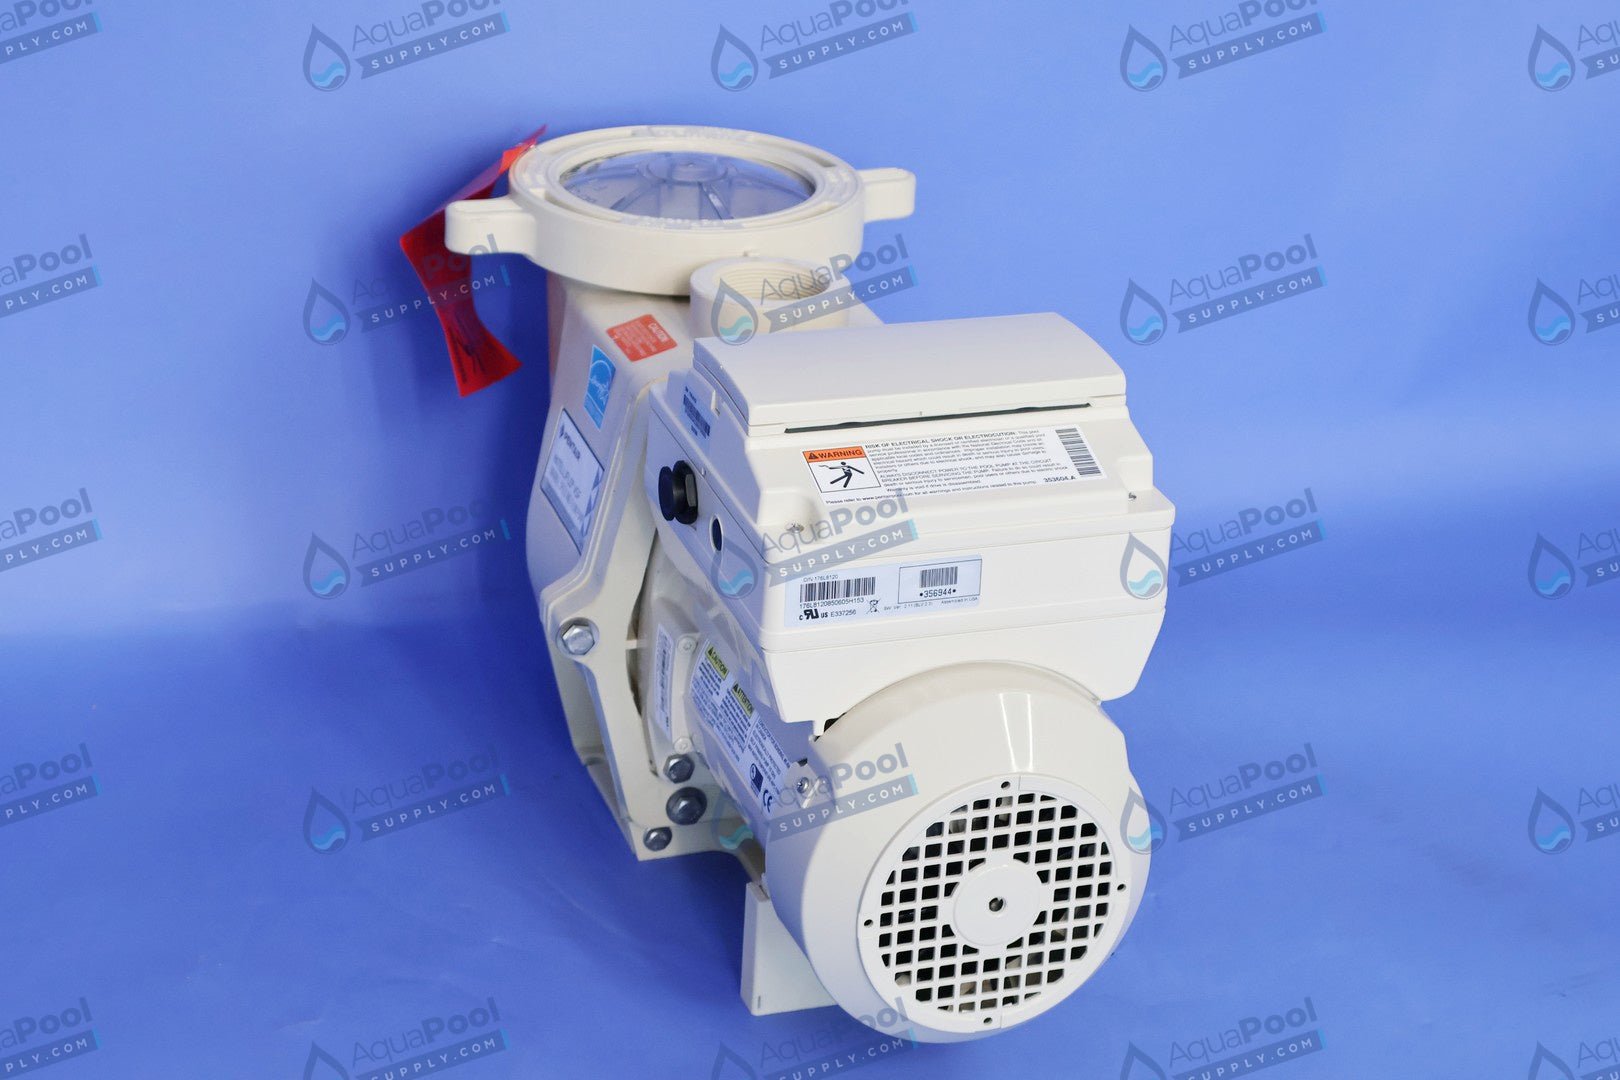 Pentair IntelliFlo® Variable Speed Pump EC-011028 (011056) - Variable Speed Pumps - img-7